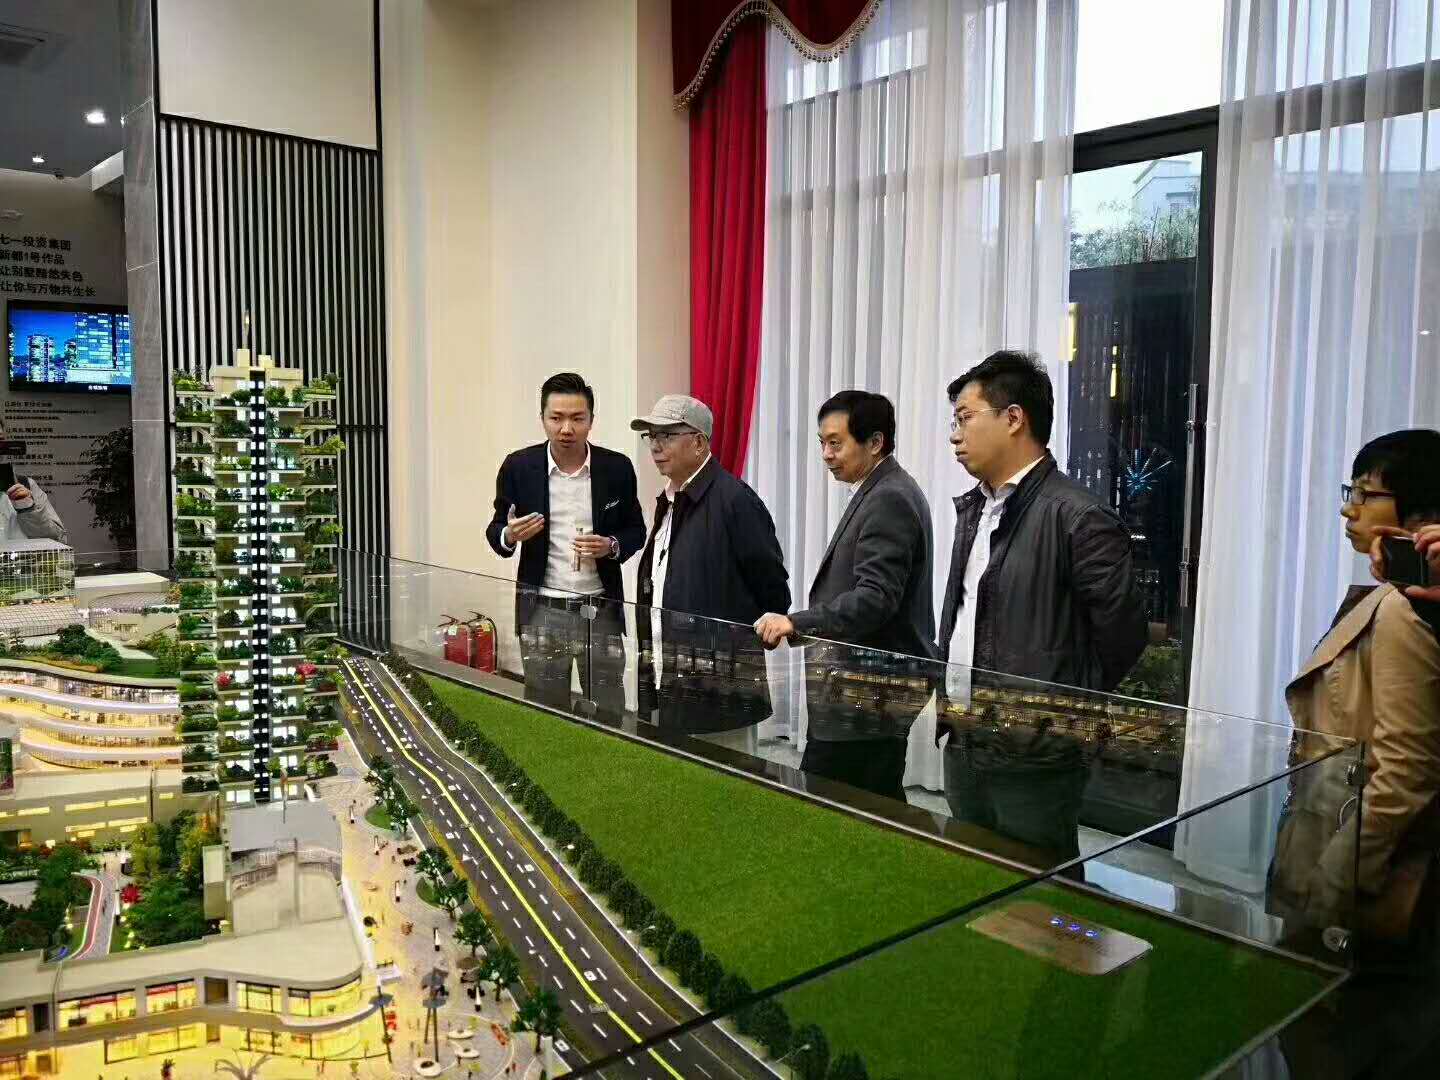 热烈欢迎  中国工程院王小东院士  莅临第四代住房项目  考察调研